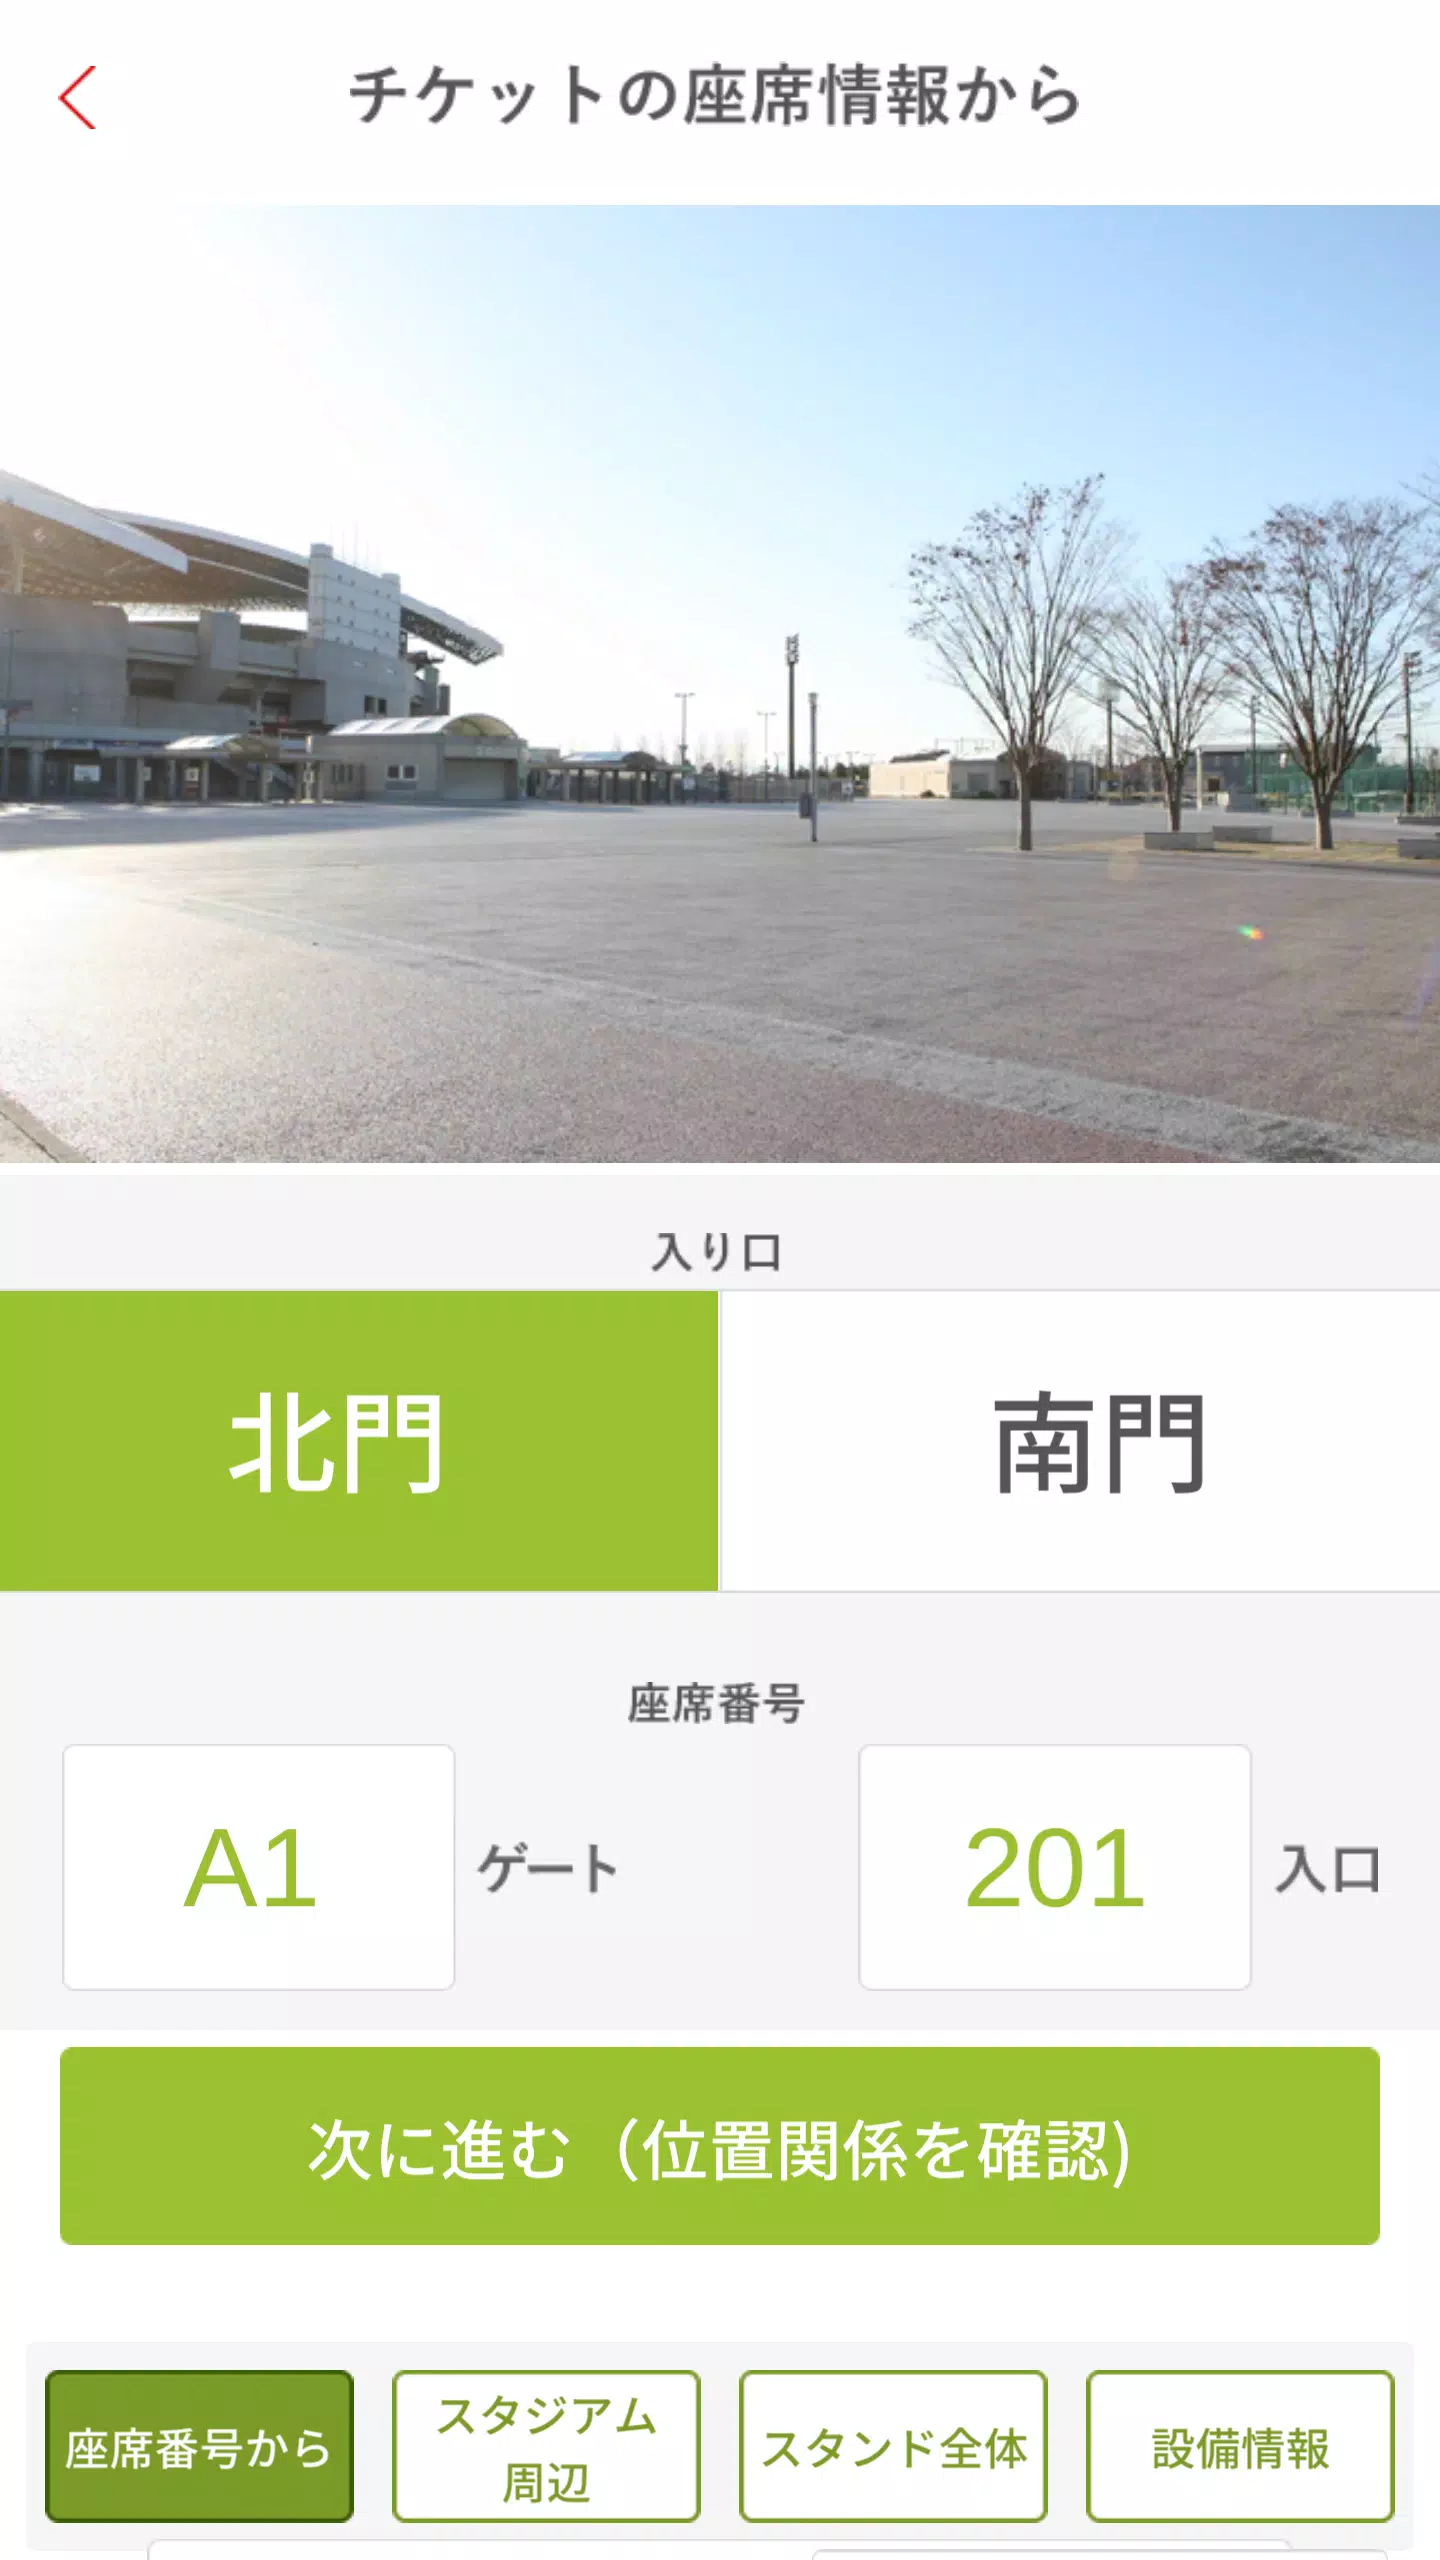 埼玉スタジアム02 Apk For Android Download